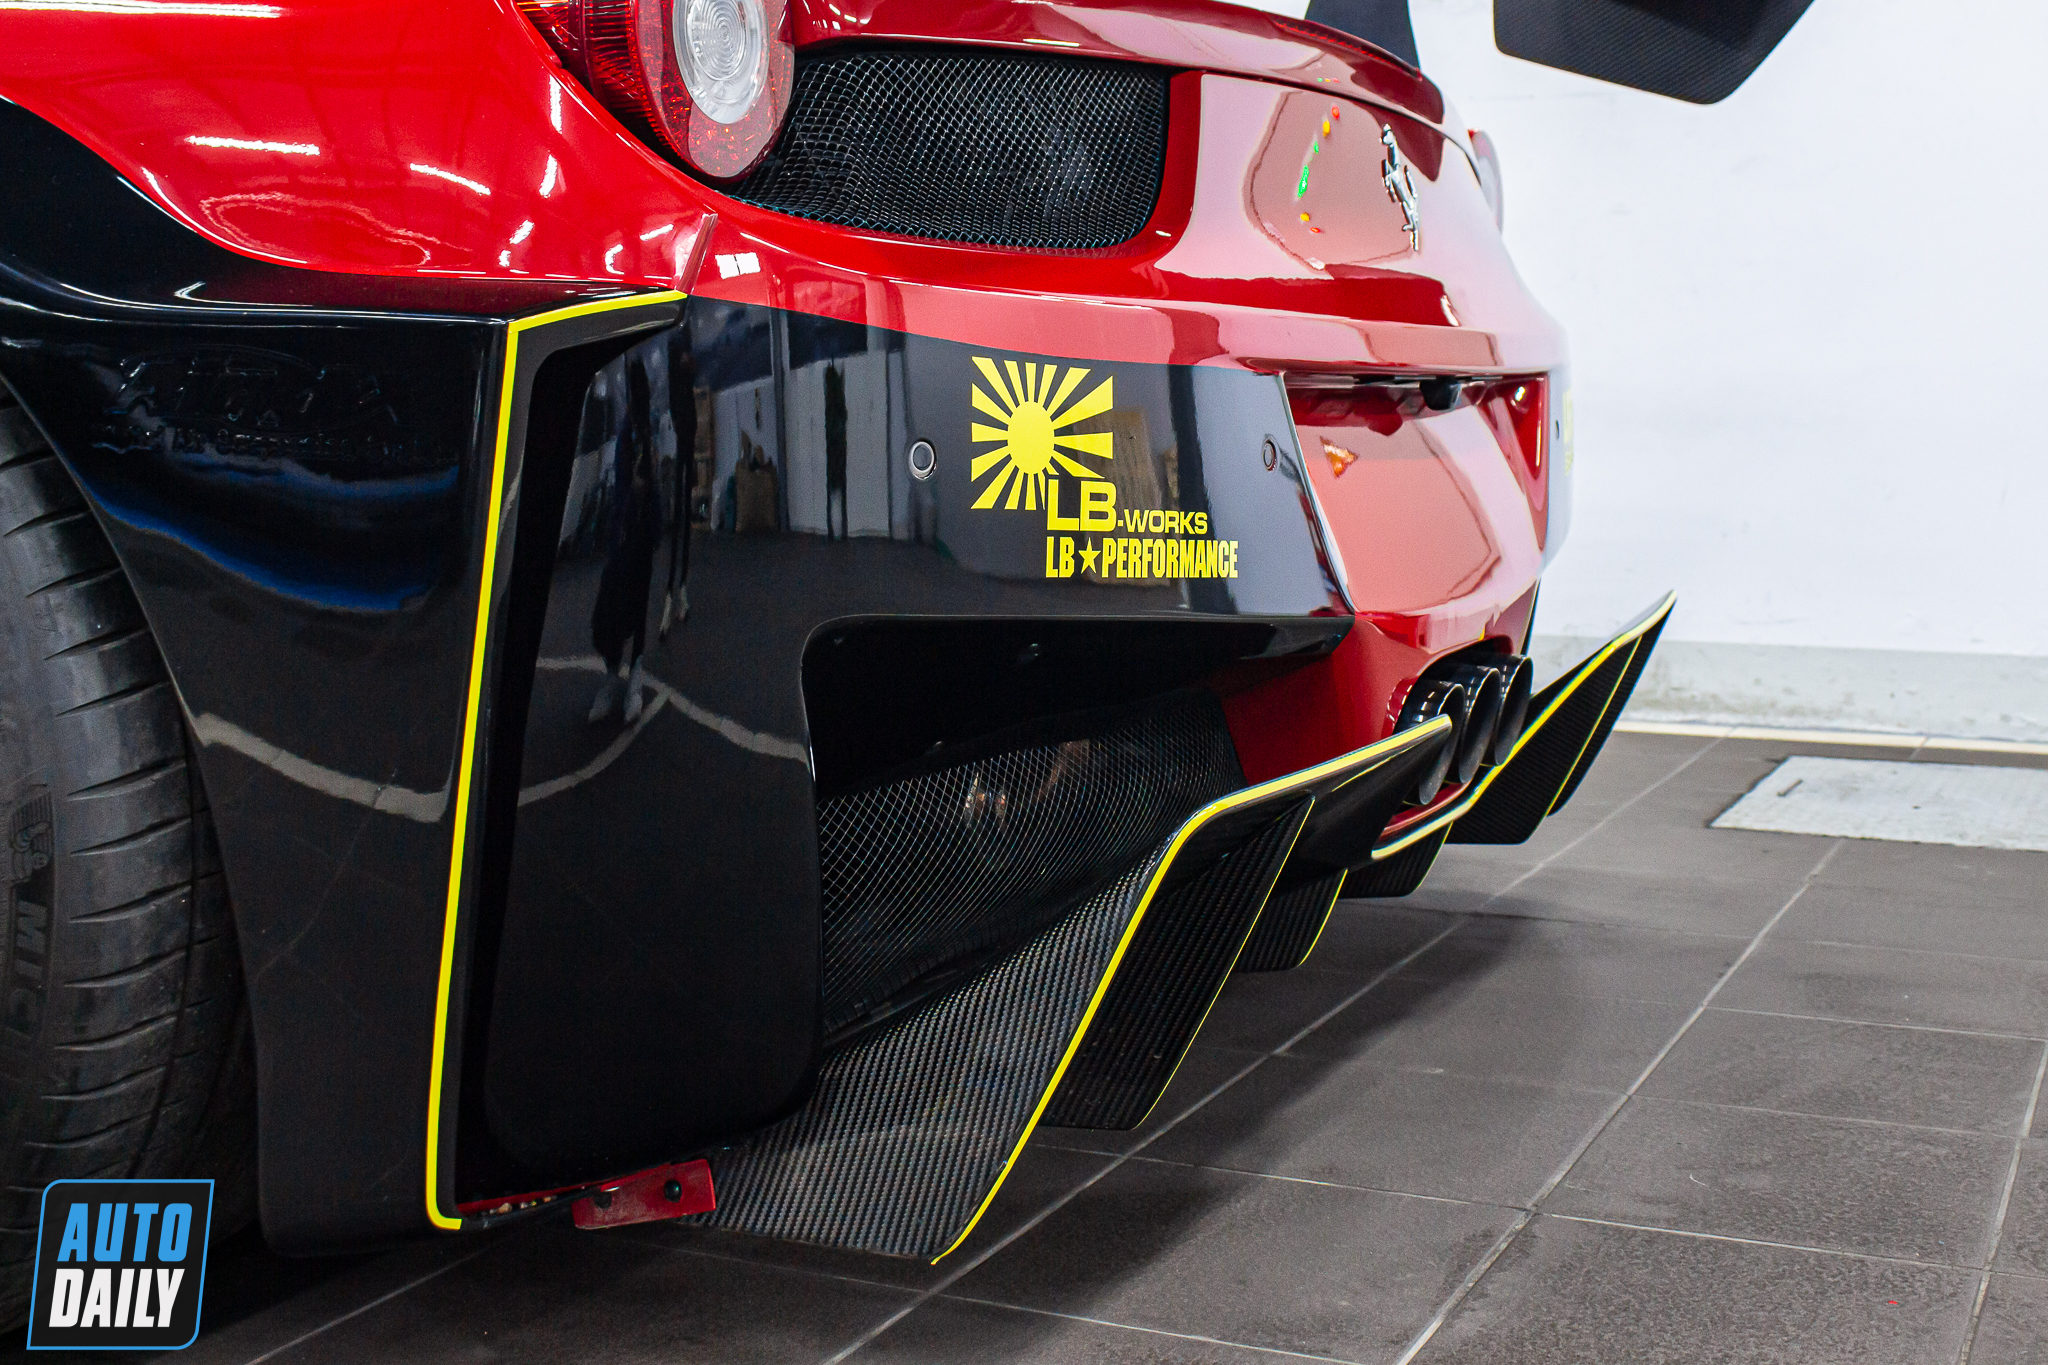 Khám phá Ferrari 458 Italia độ Liberty Walk LB-Silhouette Works độc nhất Việt Nam ferrari-458-italia-liberty-walk-autodaily-11.JPG